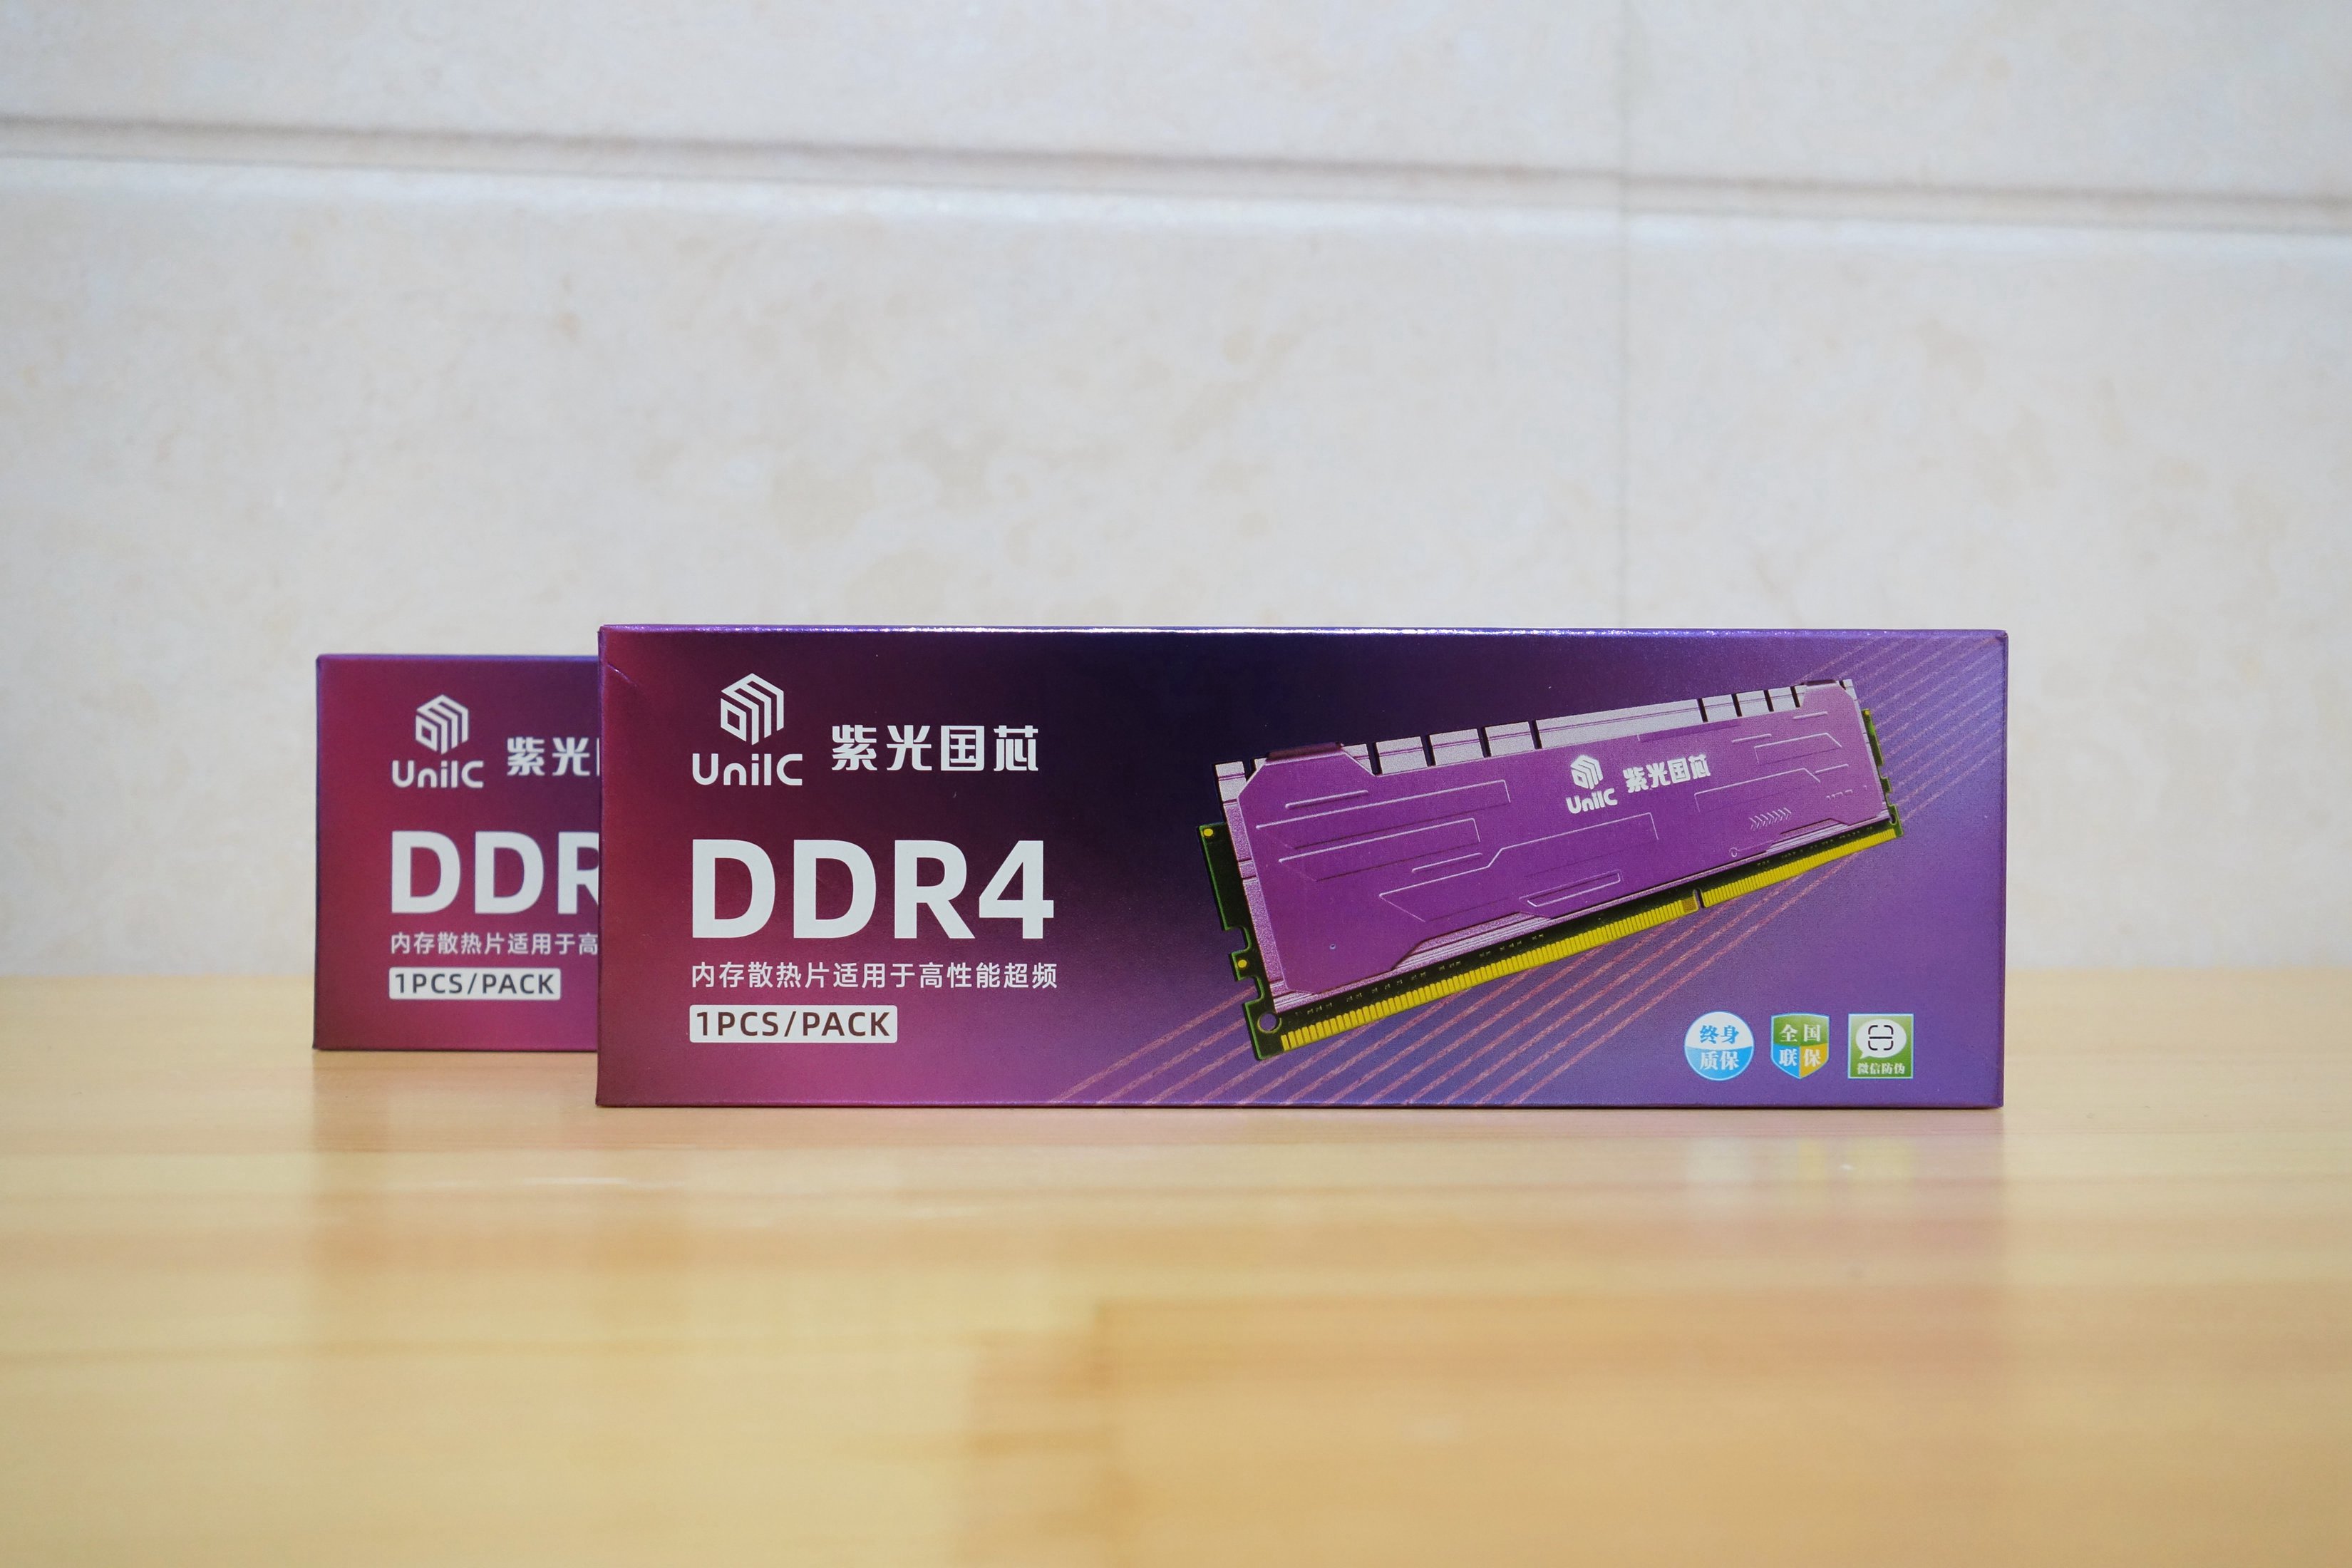 锐龙 6000 系列处理器兼容 DDR4 内存，带来全新游戏体验  第9张